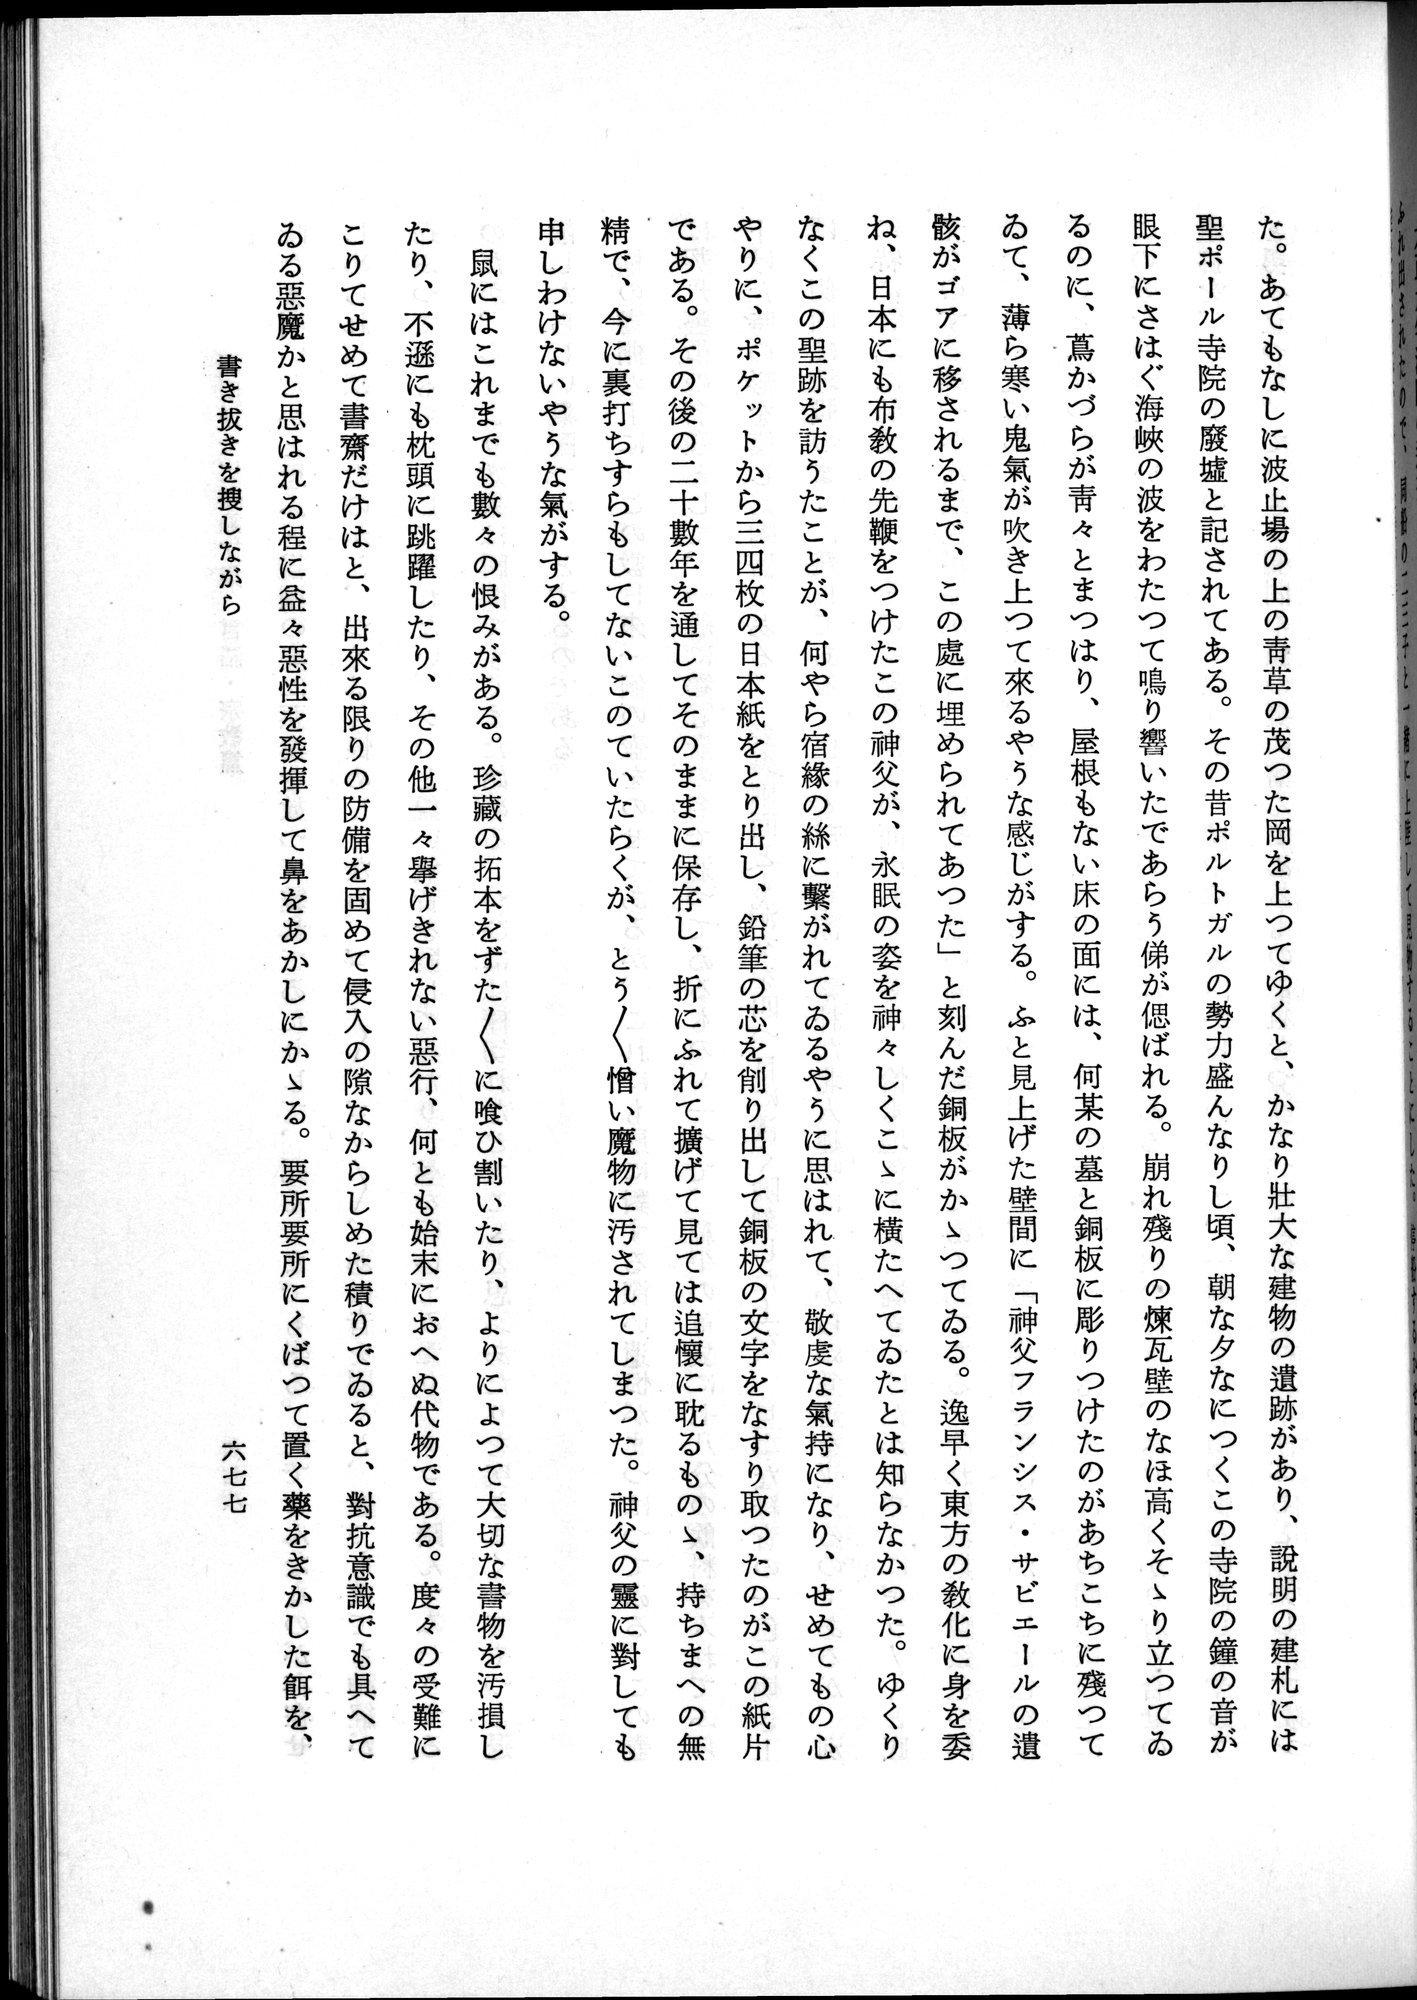 羽田博士史学論文集 : vol.2 / Page 741 (Grayscale High Resolution Image)